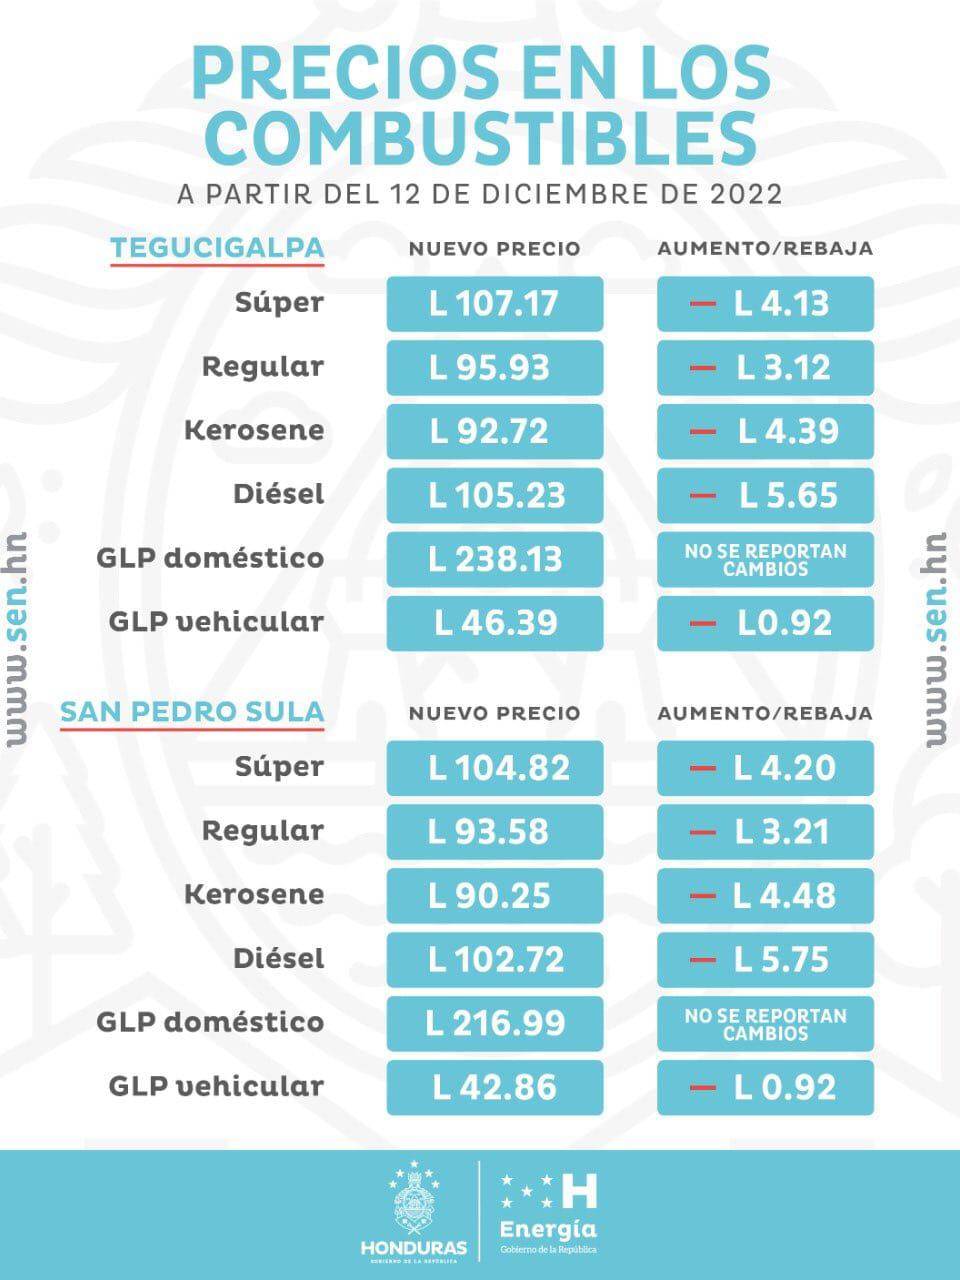 Estos serán los nuevos precios para Tegucigalpa y San Pedro Sula.